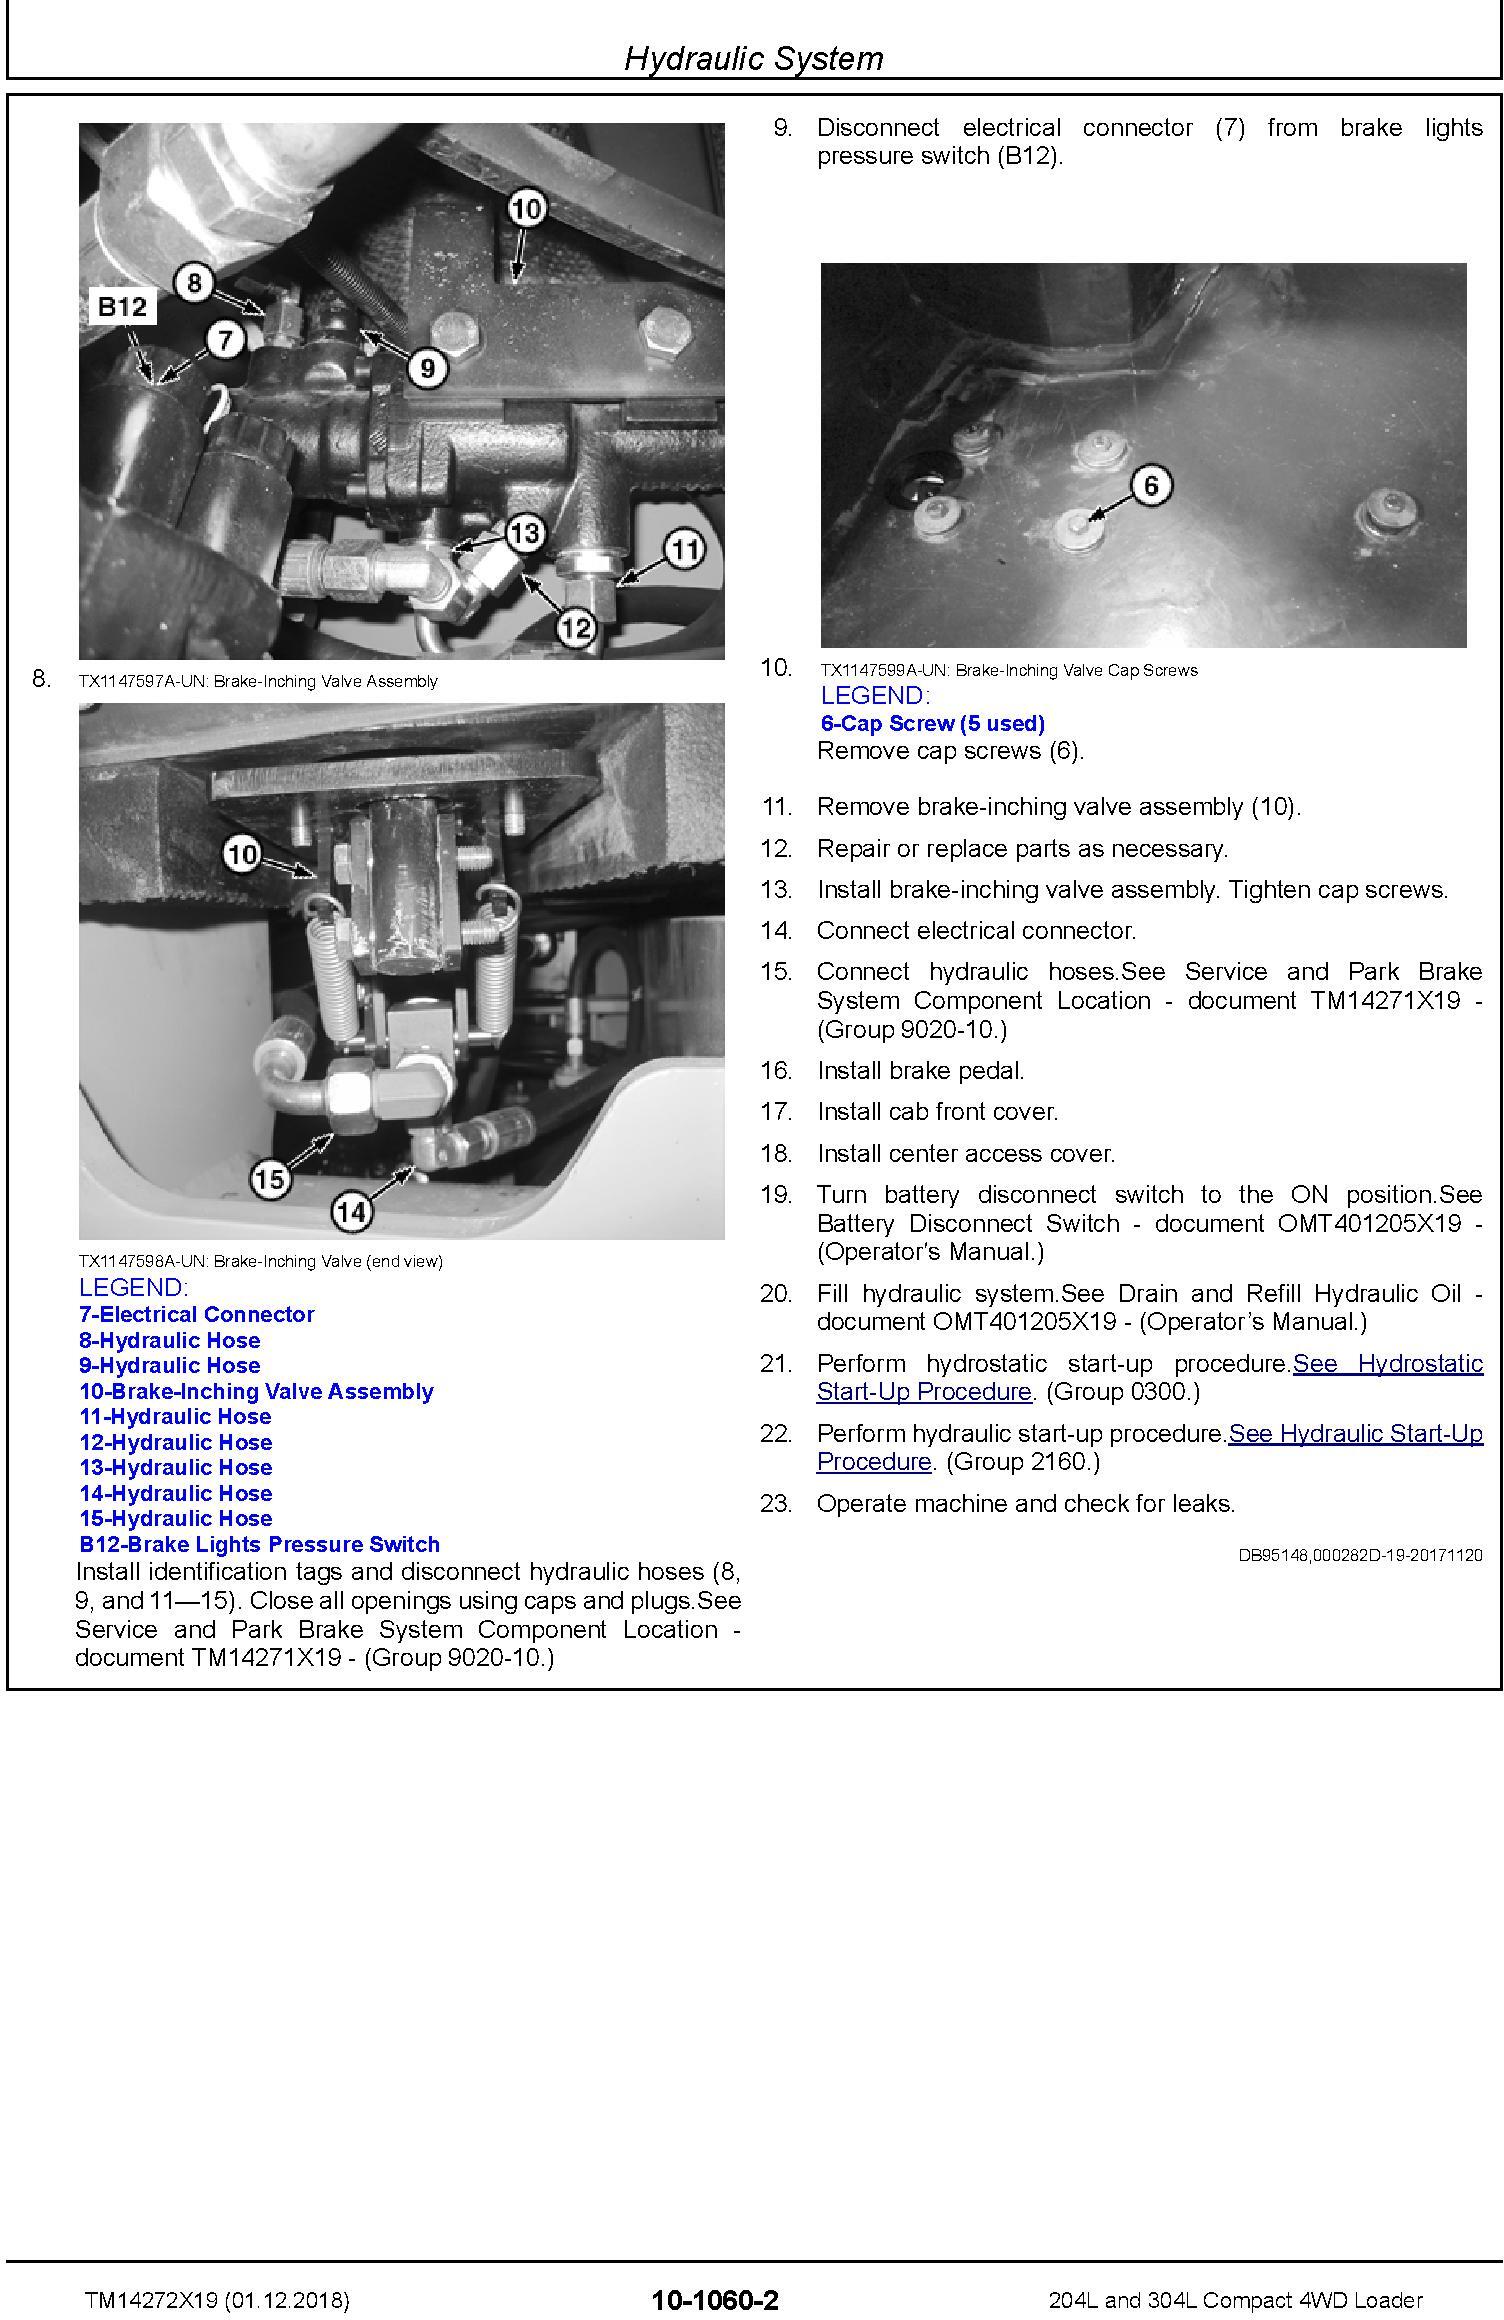 John Deere 204L and 304L (SN. B040073-) Compact 4WD Loader Service Repair Manual (TM14272X19) - 1